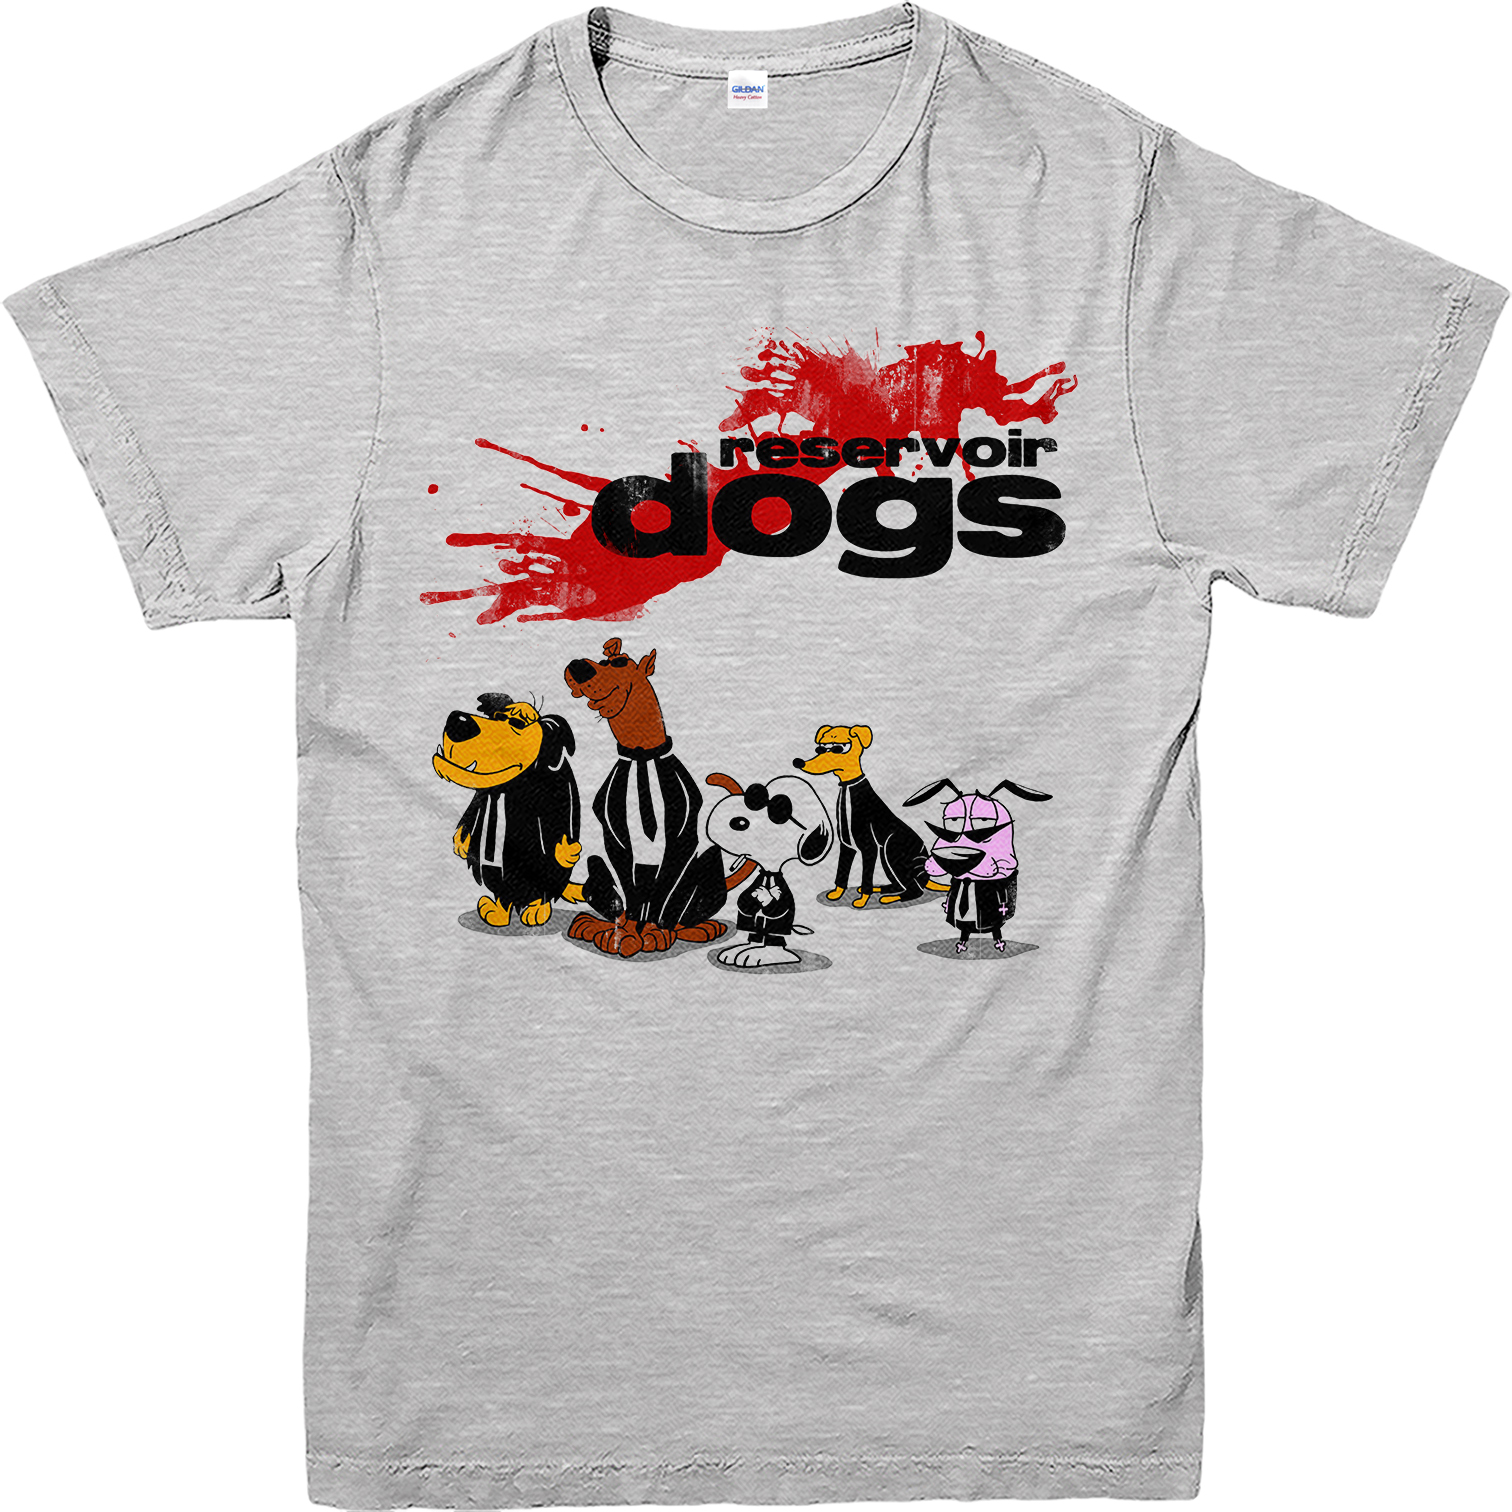 Reservoir Dogs T-Shirt, Cartoon Dog Design T-Shirt, Inspired Top | eBay